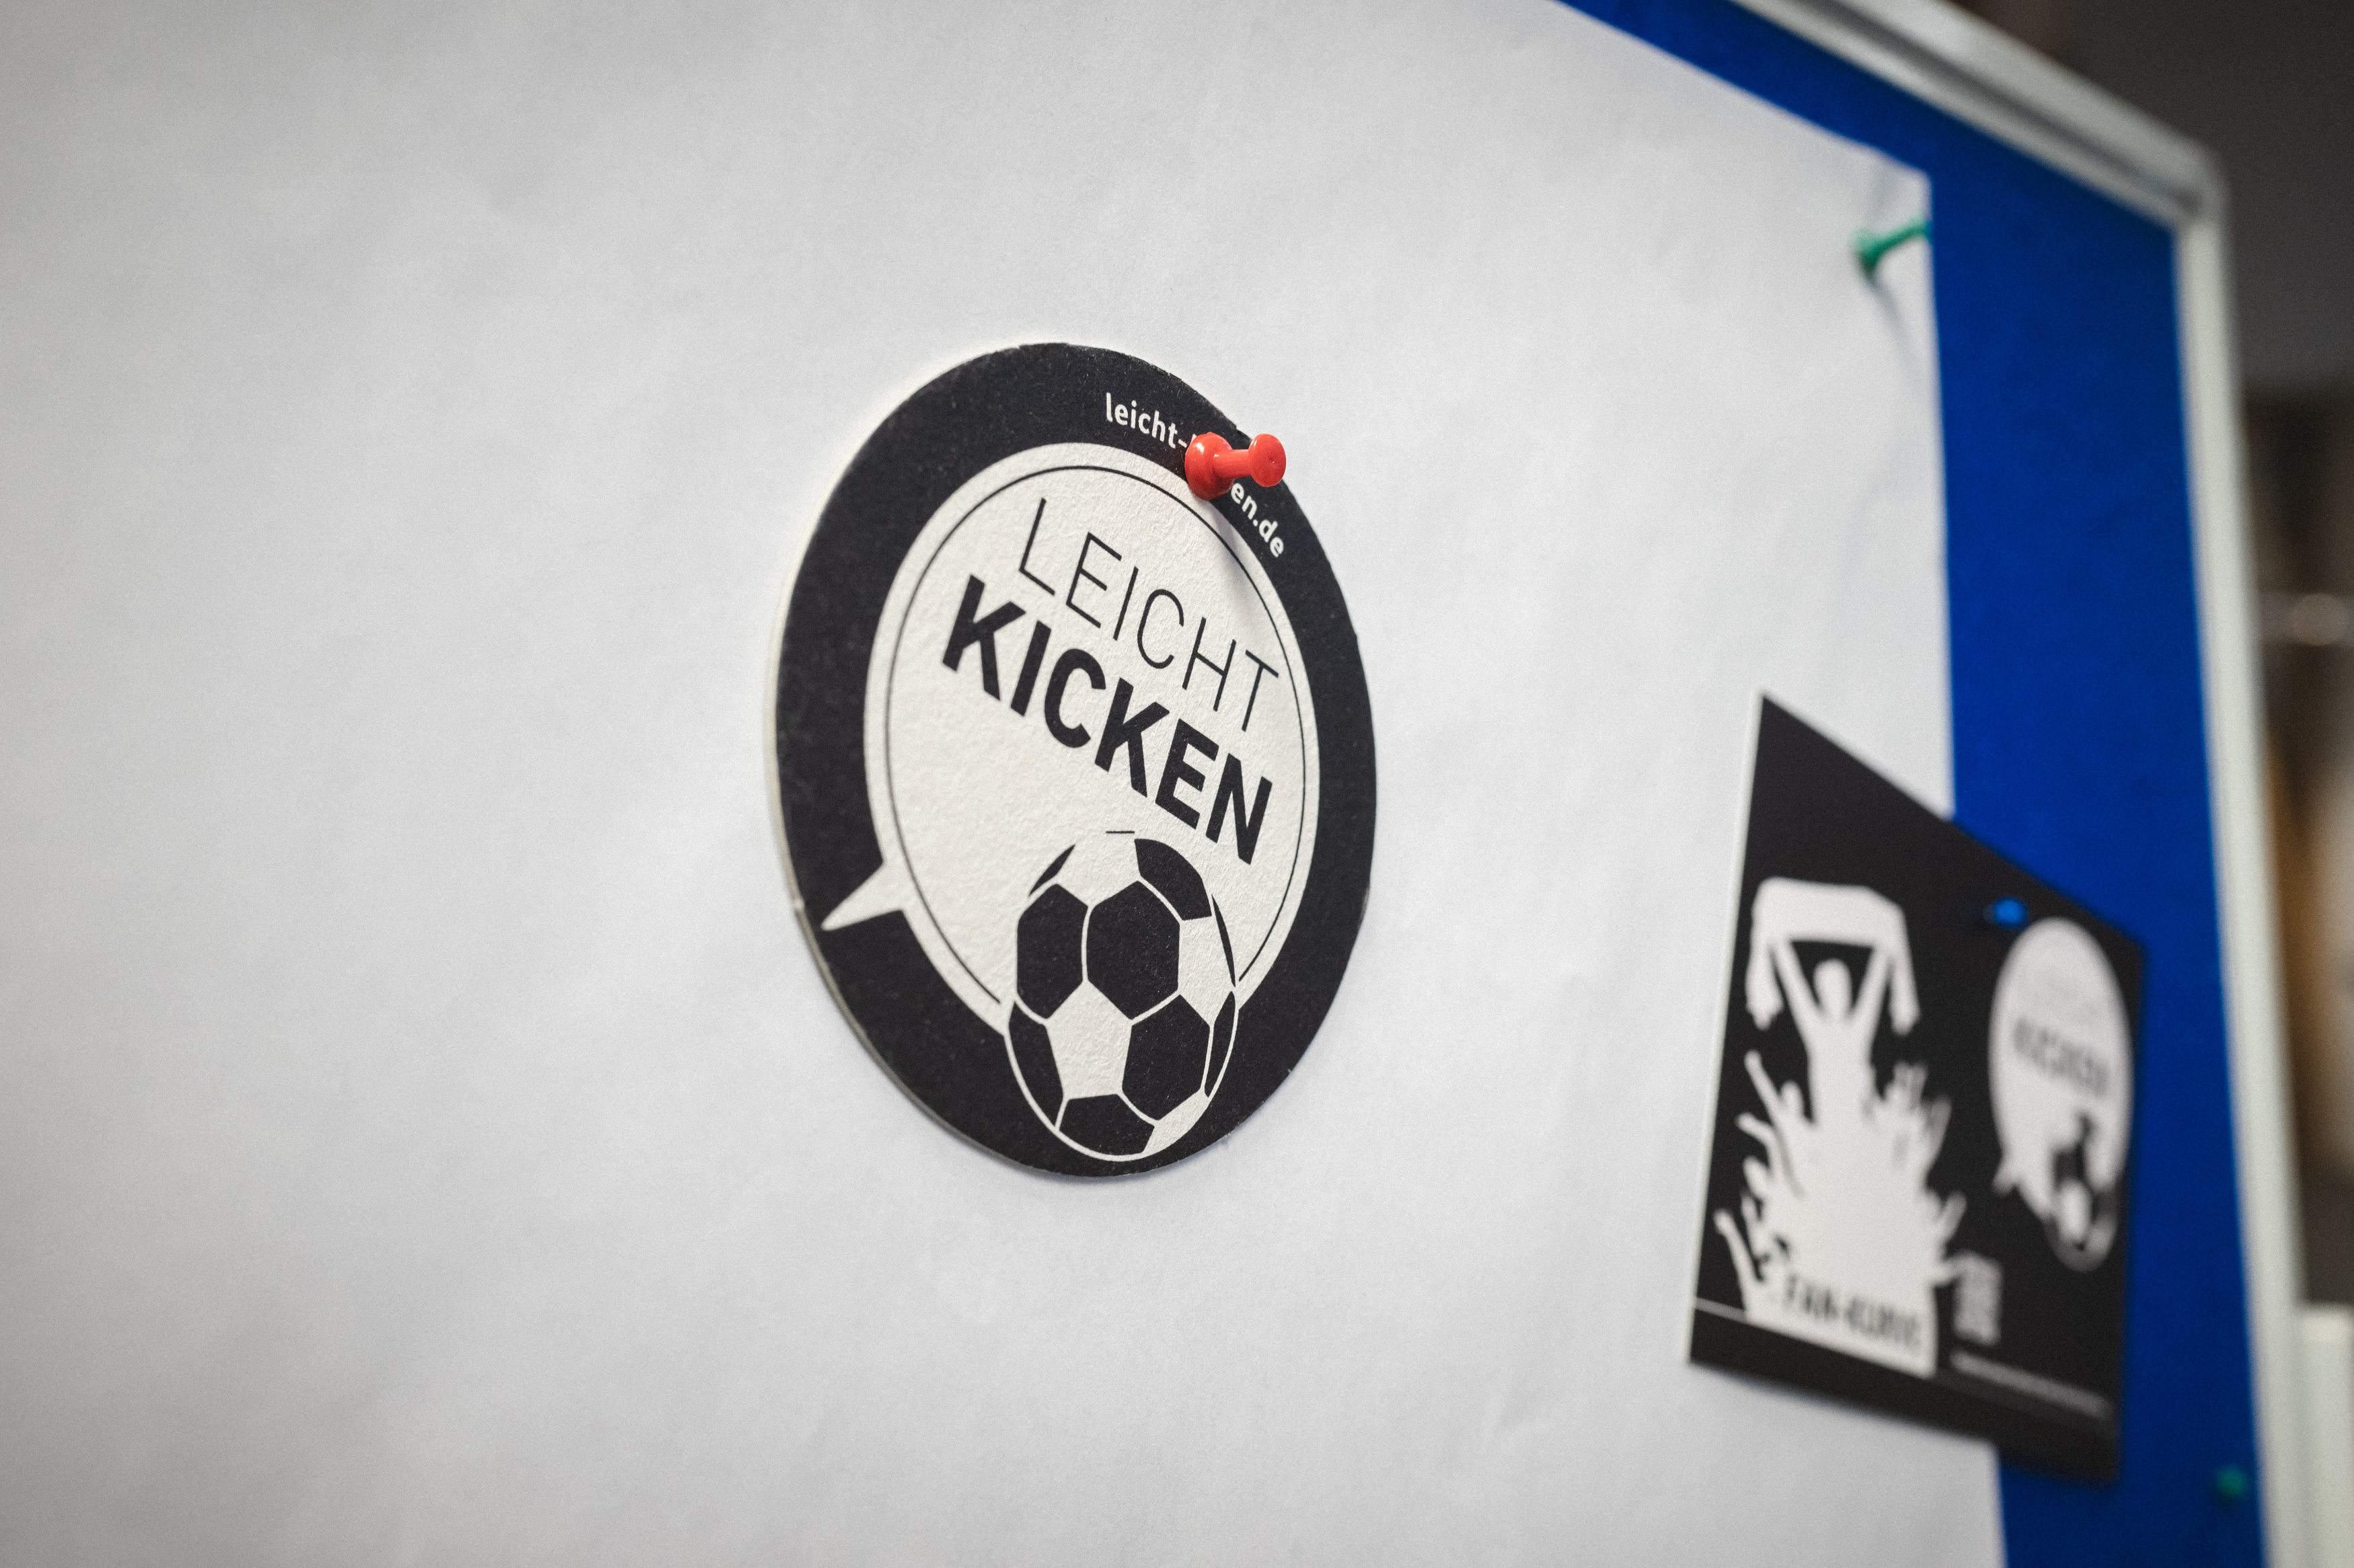 Das Logo von "Leicht Kicken" an einer Wand gepinnt.